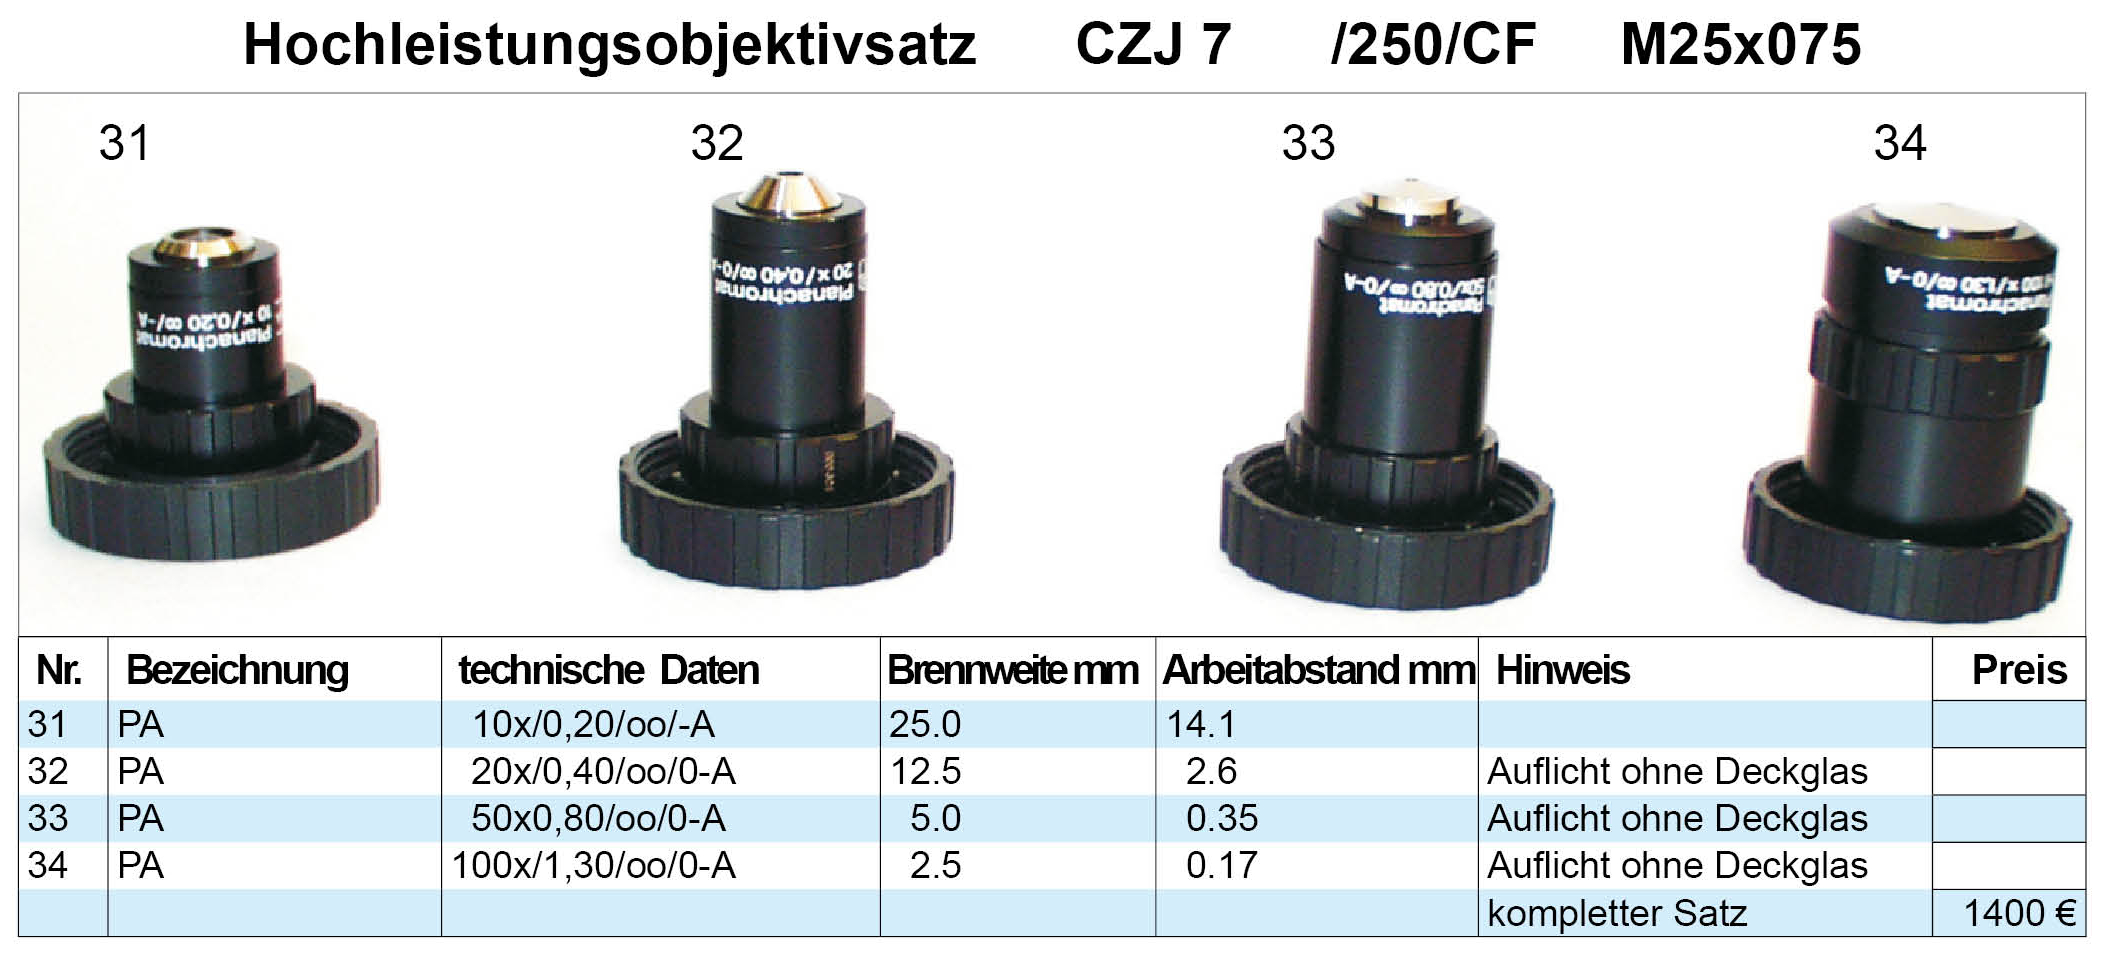 Objektivsatz-Nr-7-Zeiss-Jena53c509b419c82